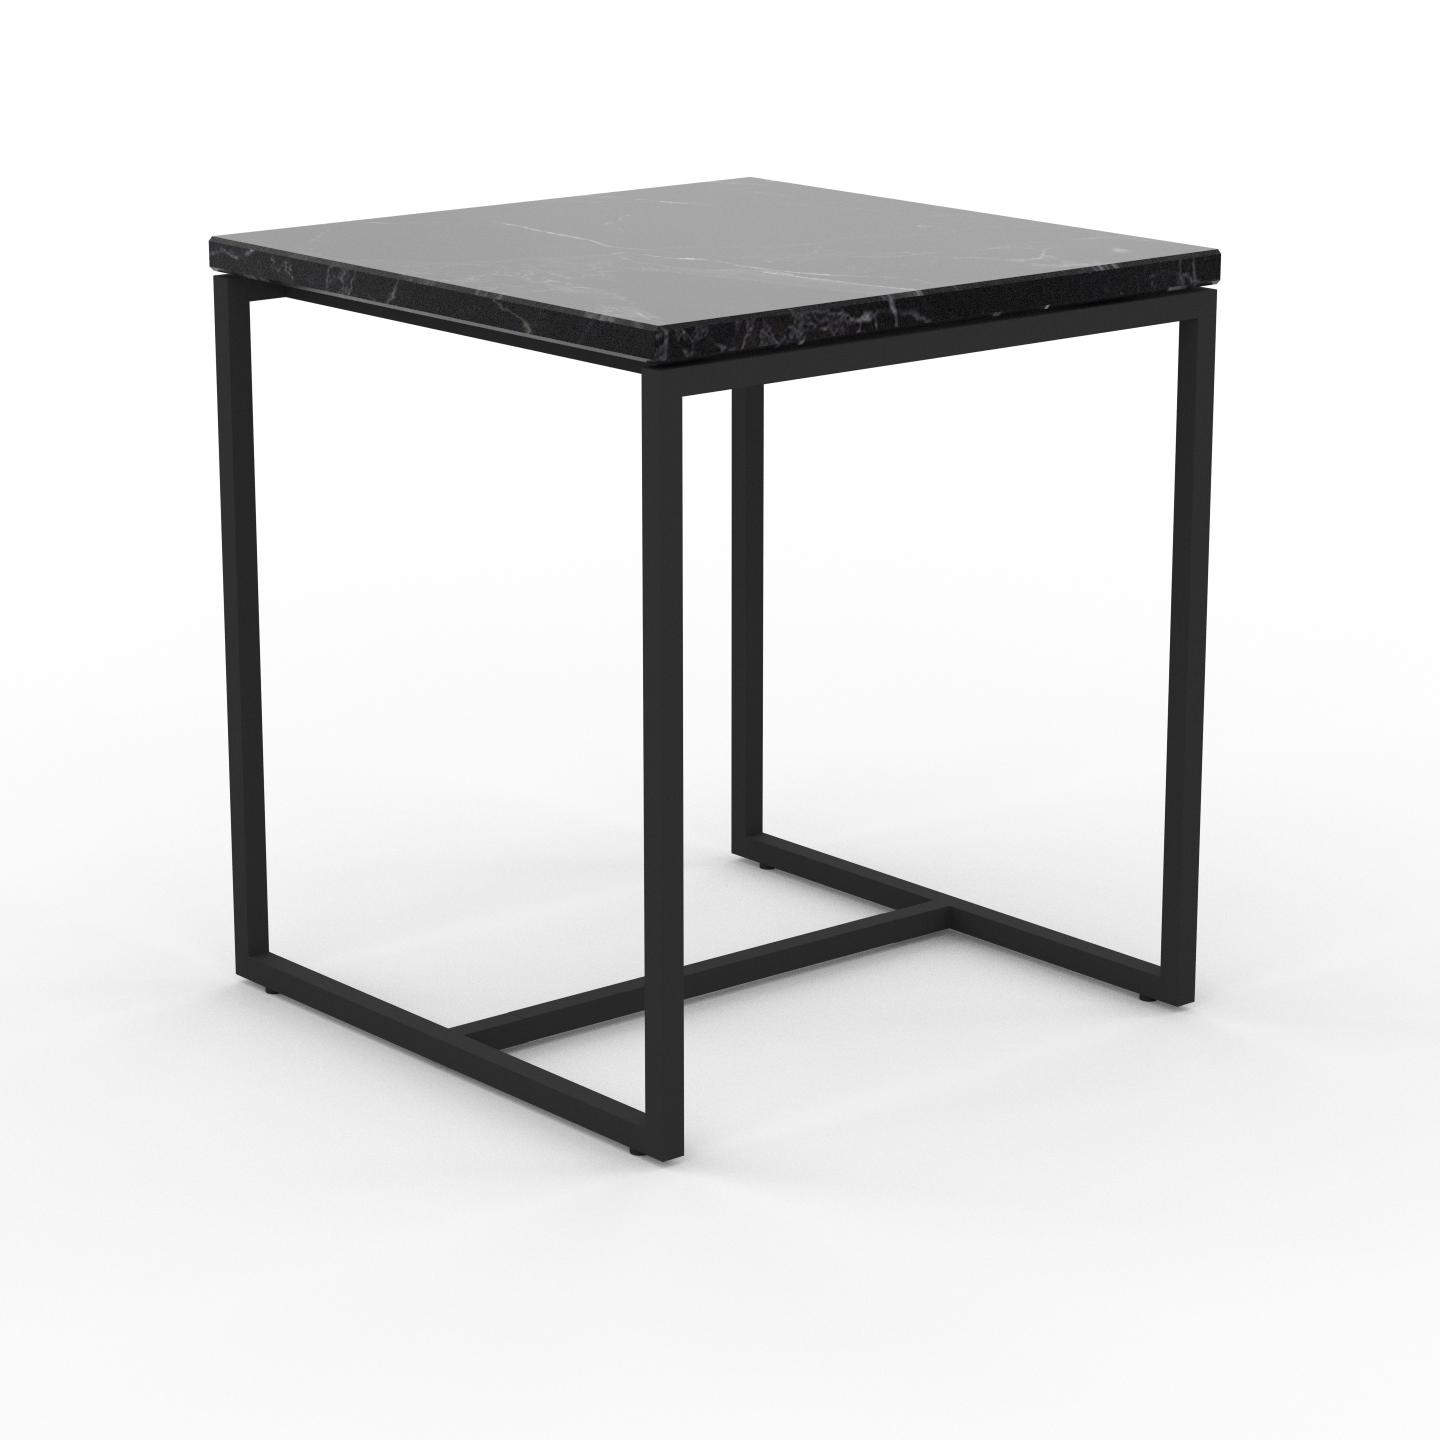 MYCS Beistelltisch Marmor, Schwarzer Marquina - Eleganter Nachttisch: Hochwertige Materialien, einzigartiges Design - 42 x 46 x 42 cm, Komplett anpassbar